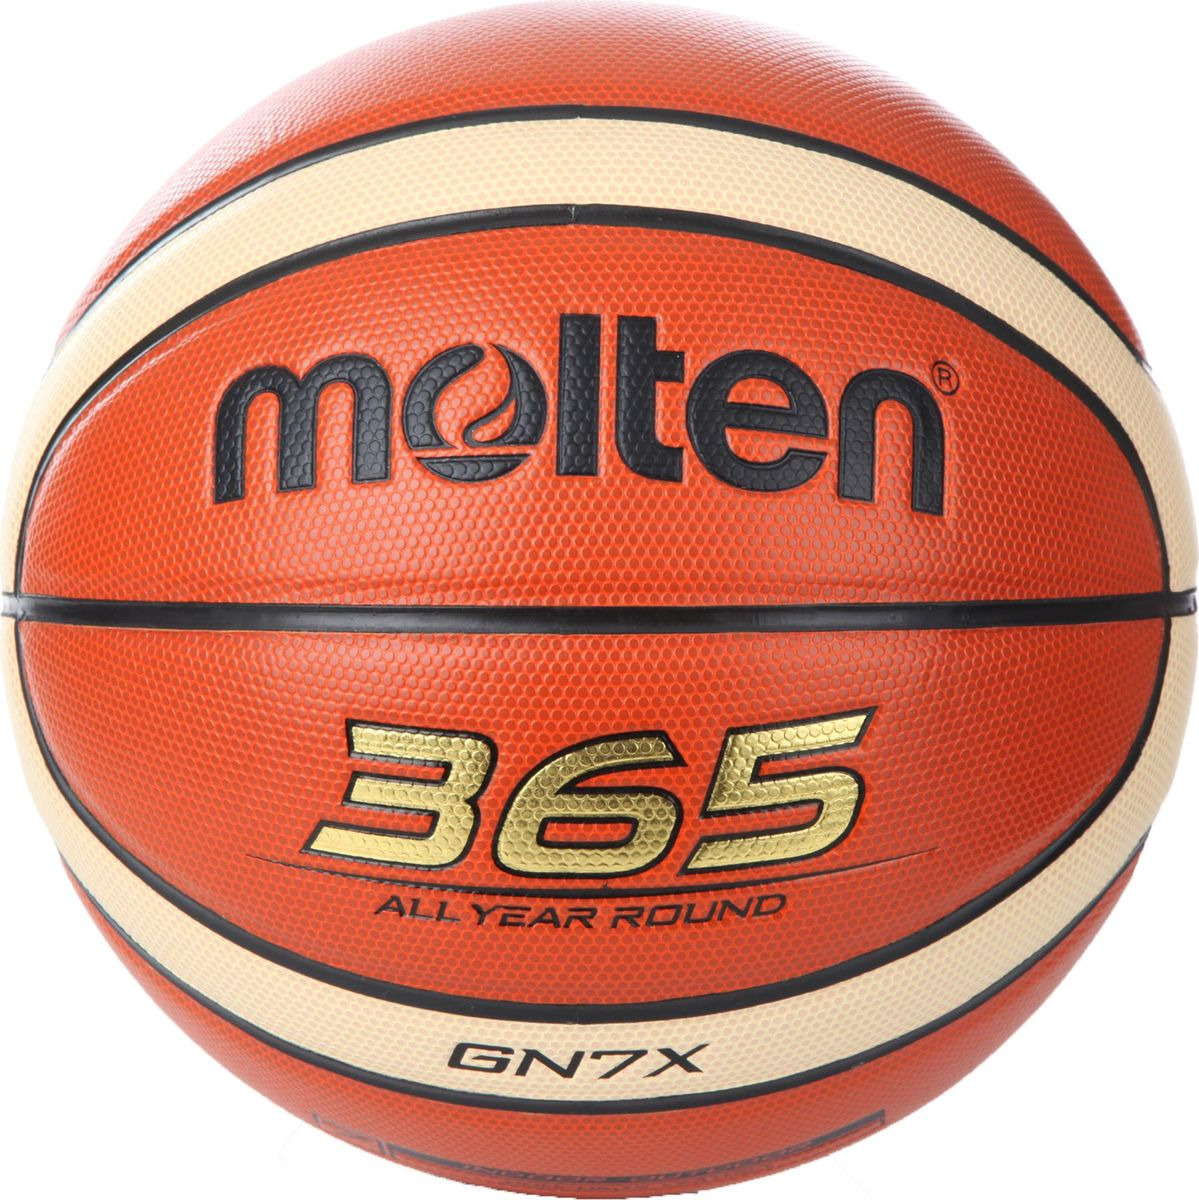 Мяч баскетбольный Molten, BGN7X, размер 7